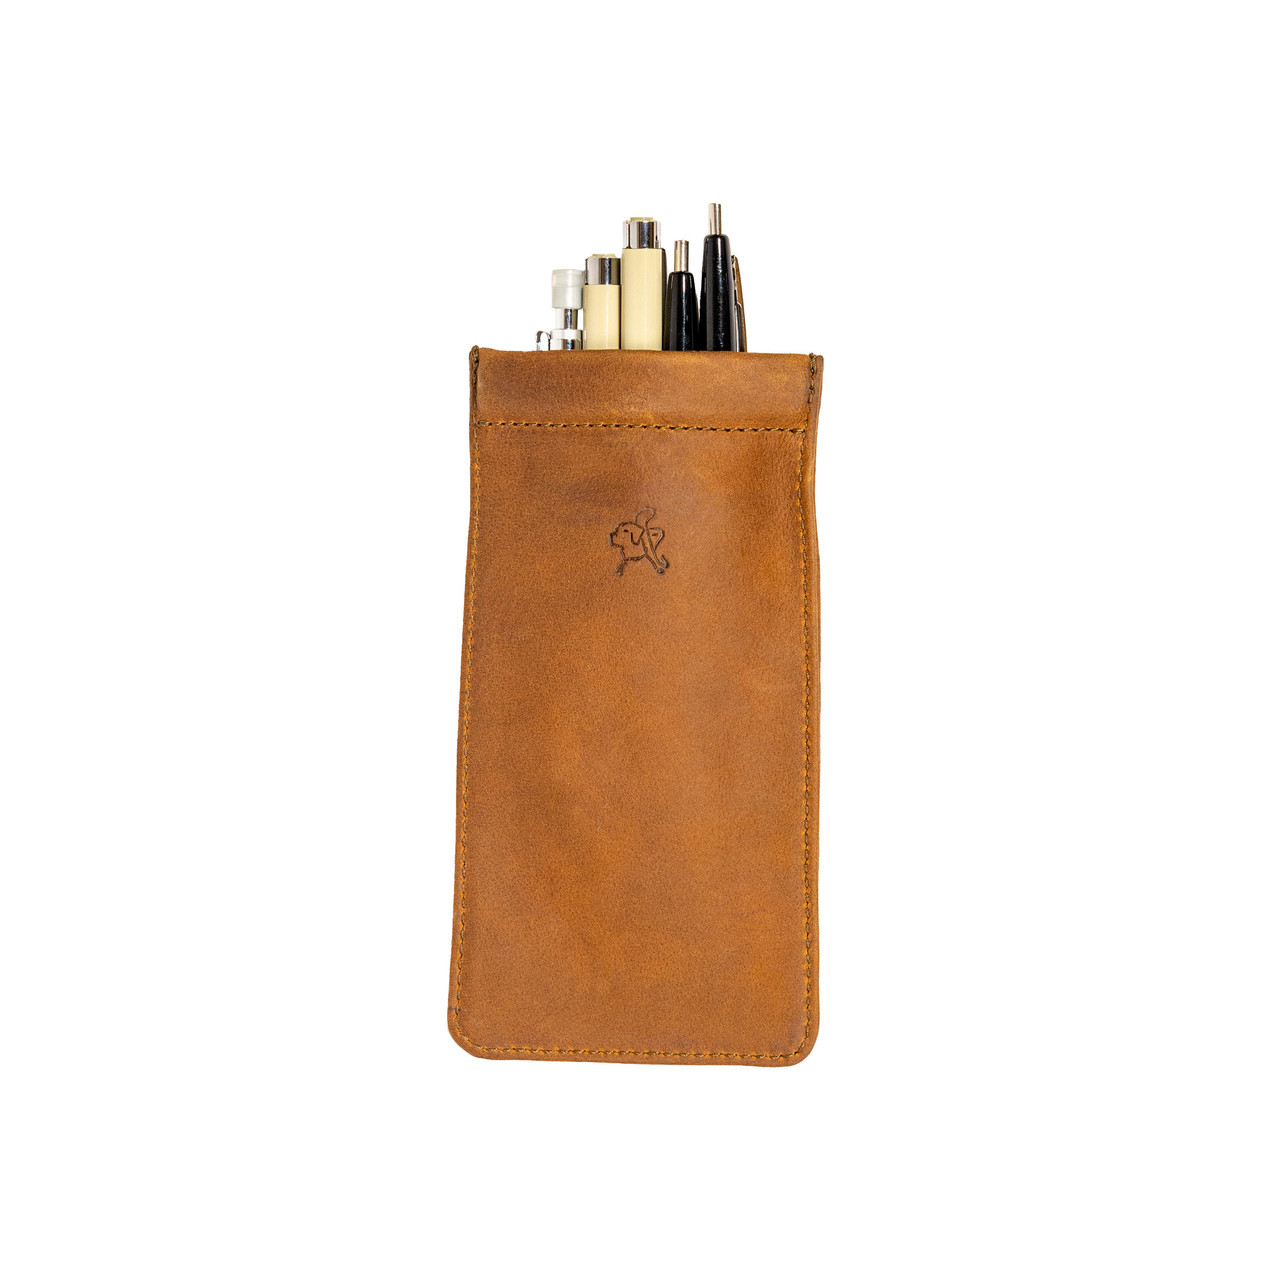 Leather Pen Case, Pencil Pouch Bag, Long Coin Purse